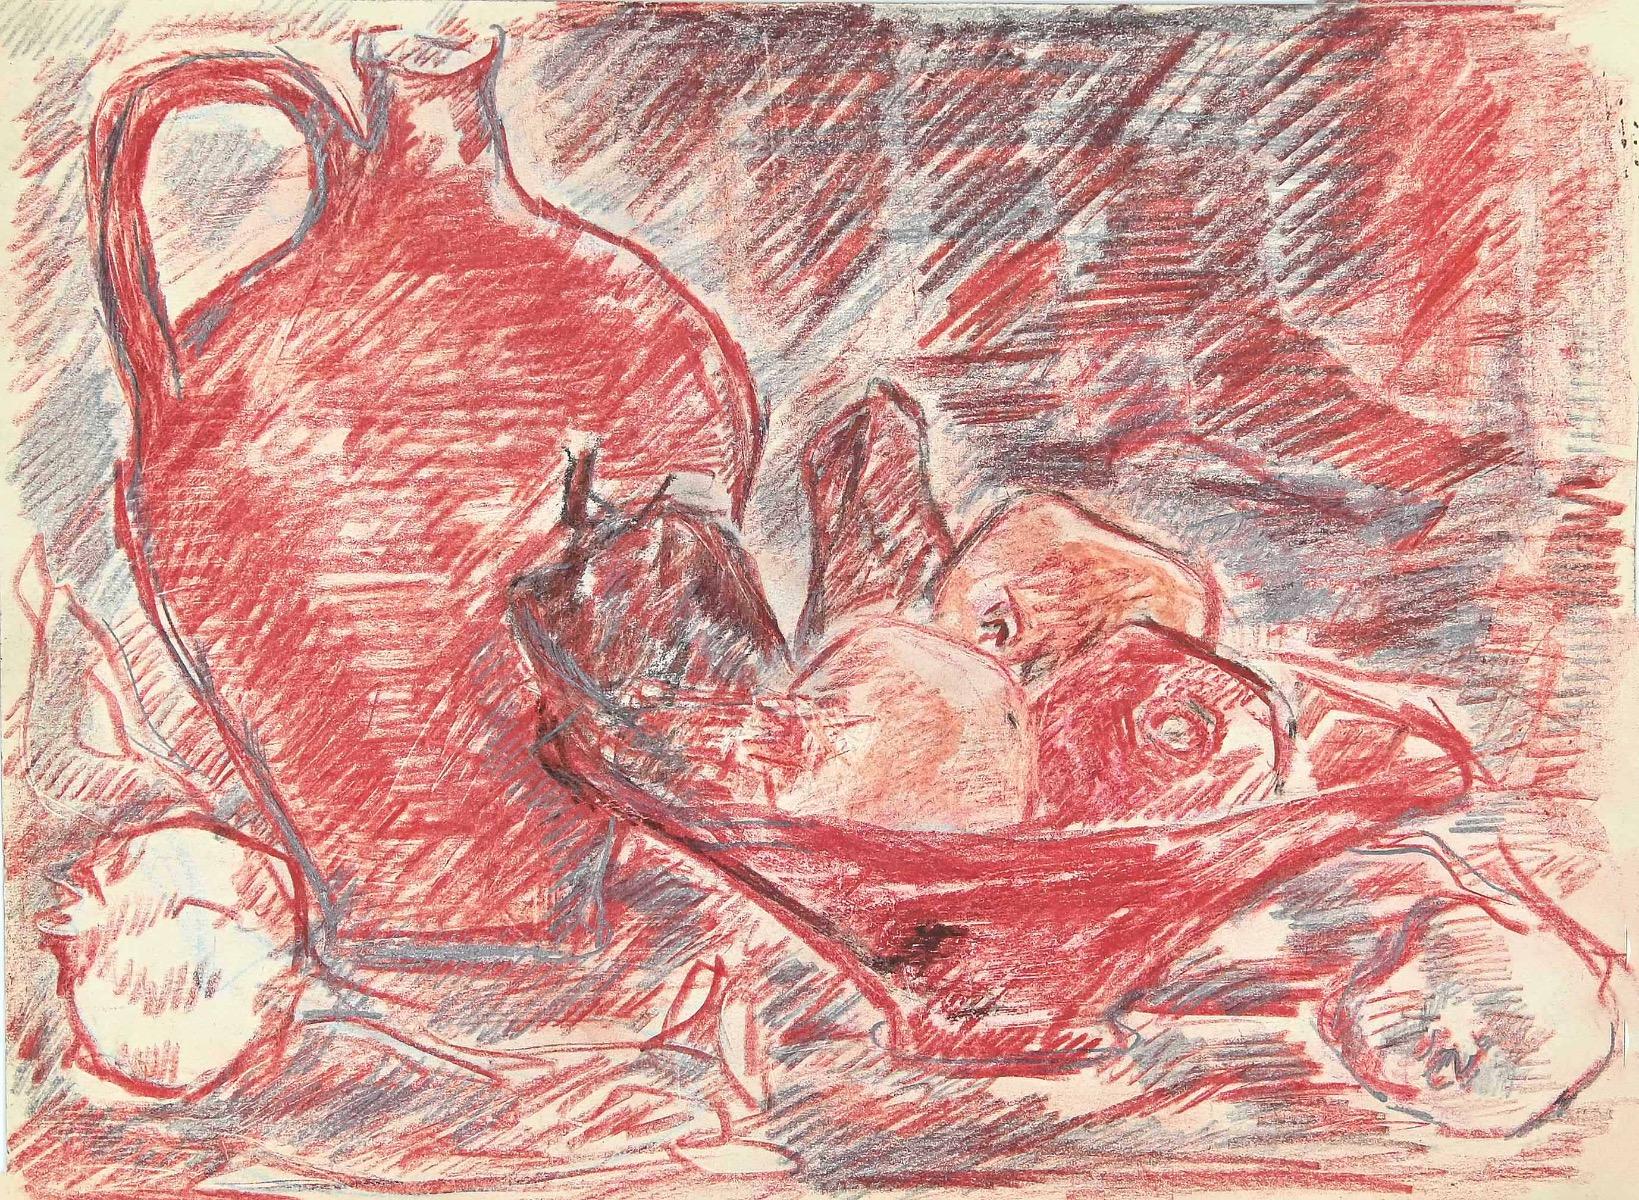 Das Stillleben ist eine originale Pastellzeichnung auf elfenbeinfarbenem Papier von Herta Haussmann (1892-1972).

Nicht unterzeichnet.

Der Erhaltungszustand ist sehr gut.

Stempel des Ateliers des Künstlers auf der Rückseite.